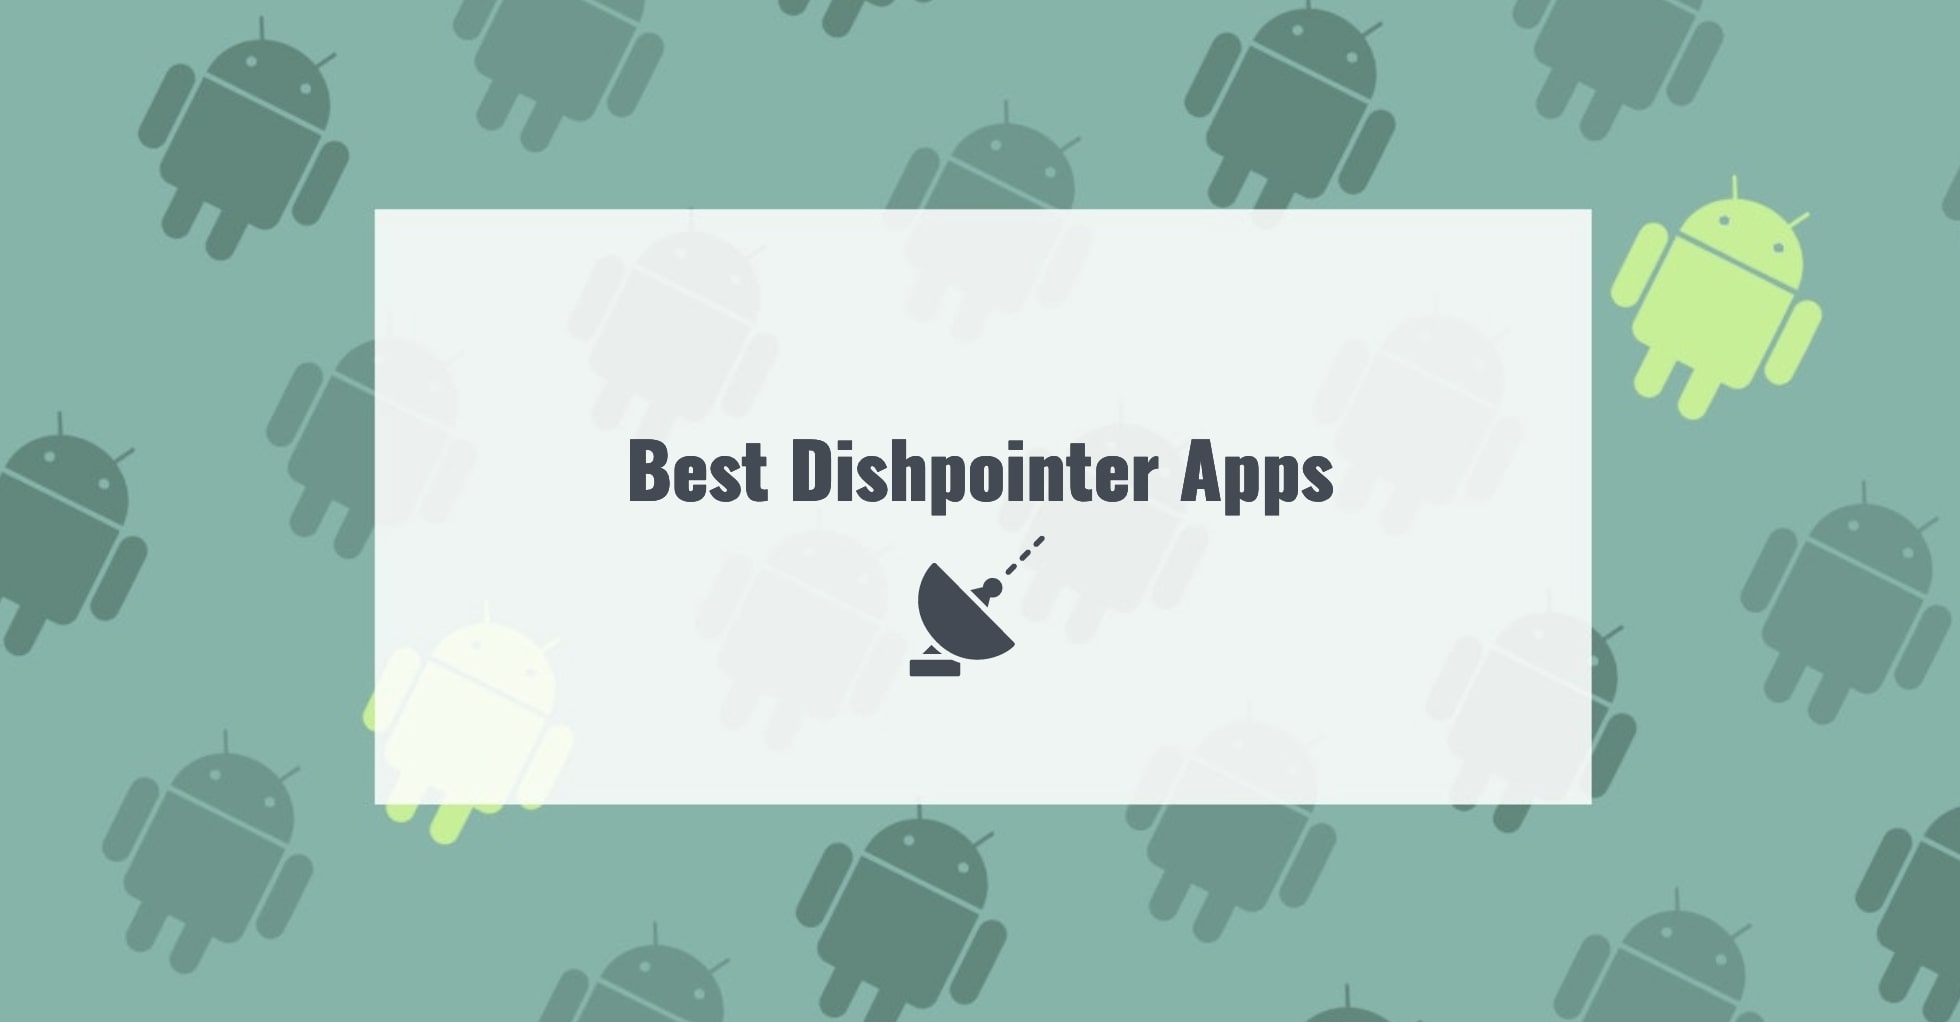 Best Dishpointer Apps